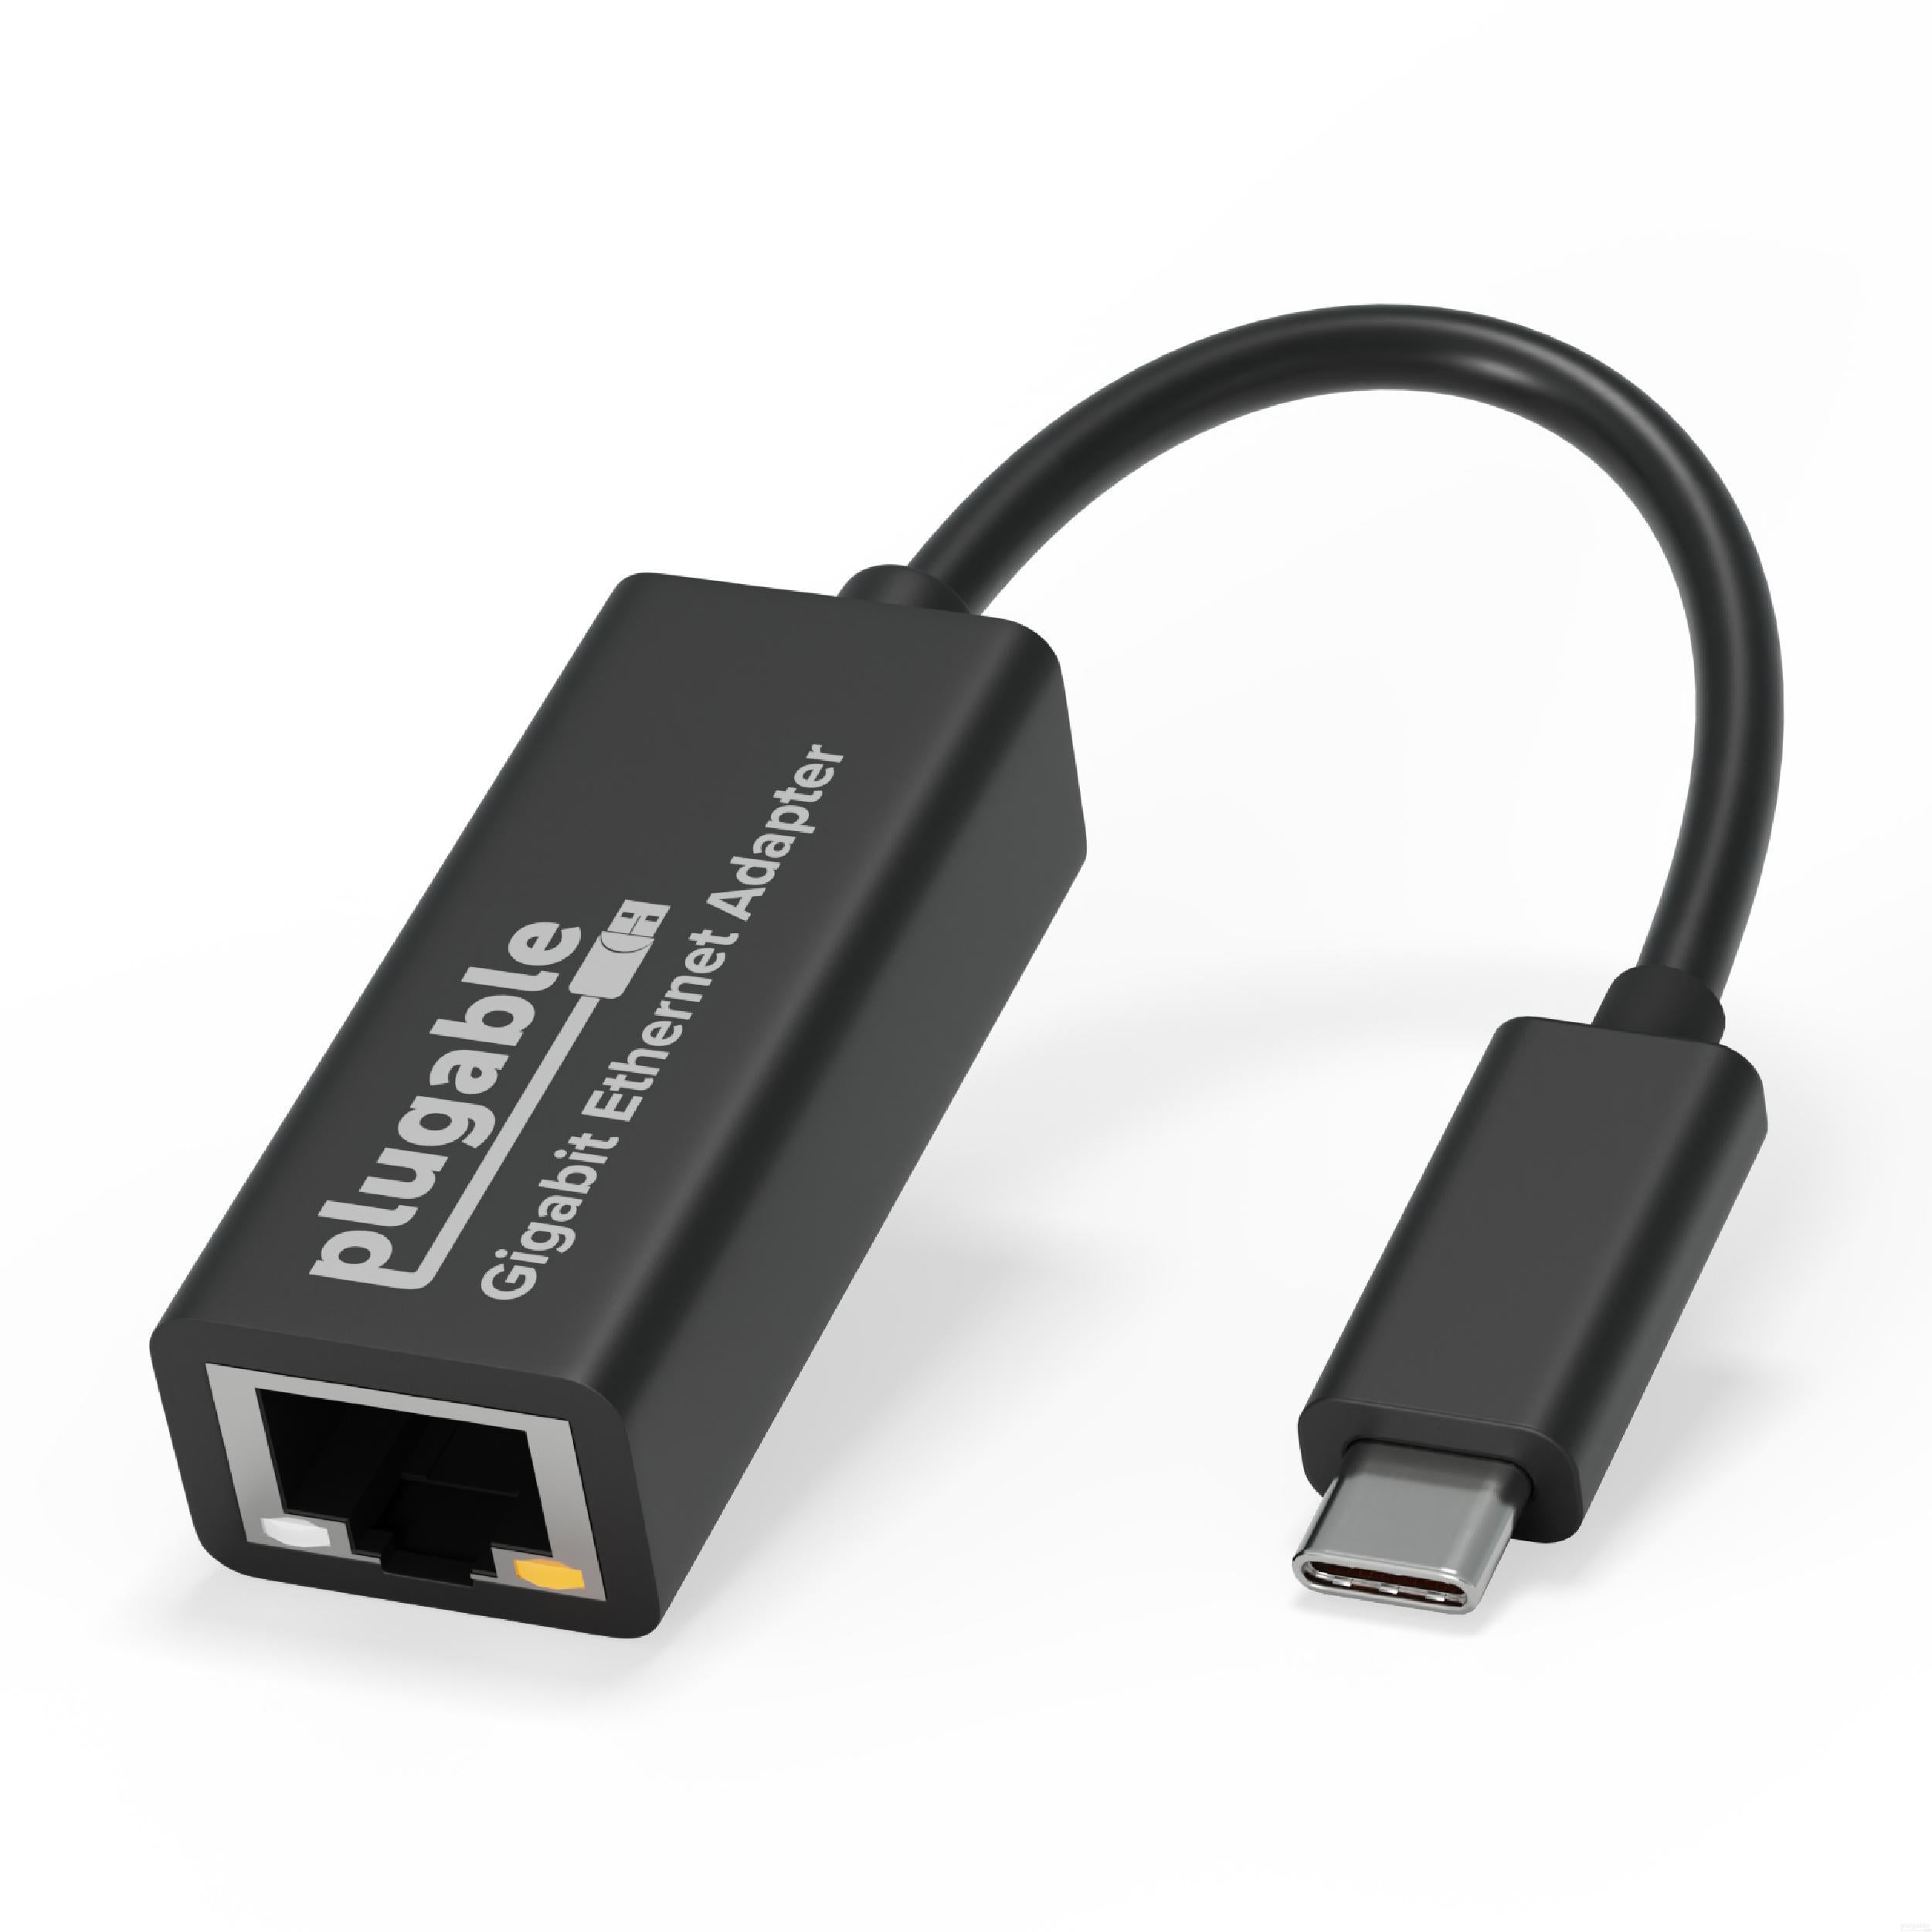 Wii U USB Helper 1.2 - Download for PC Free